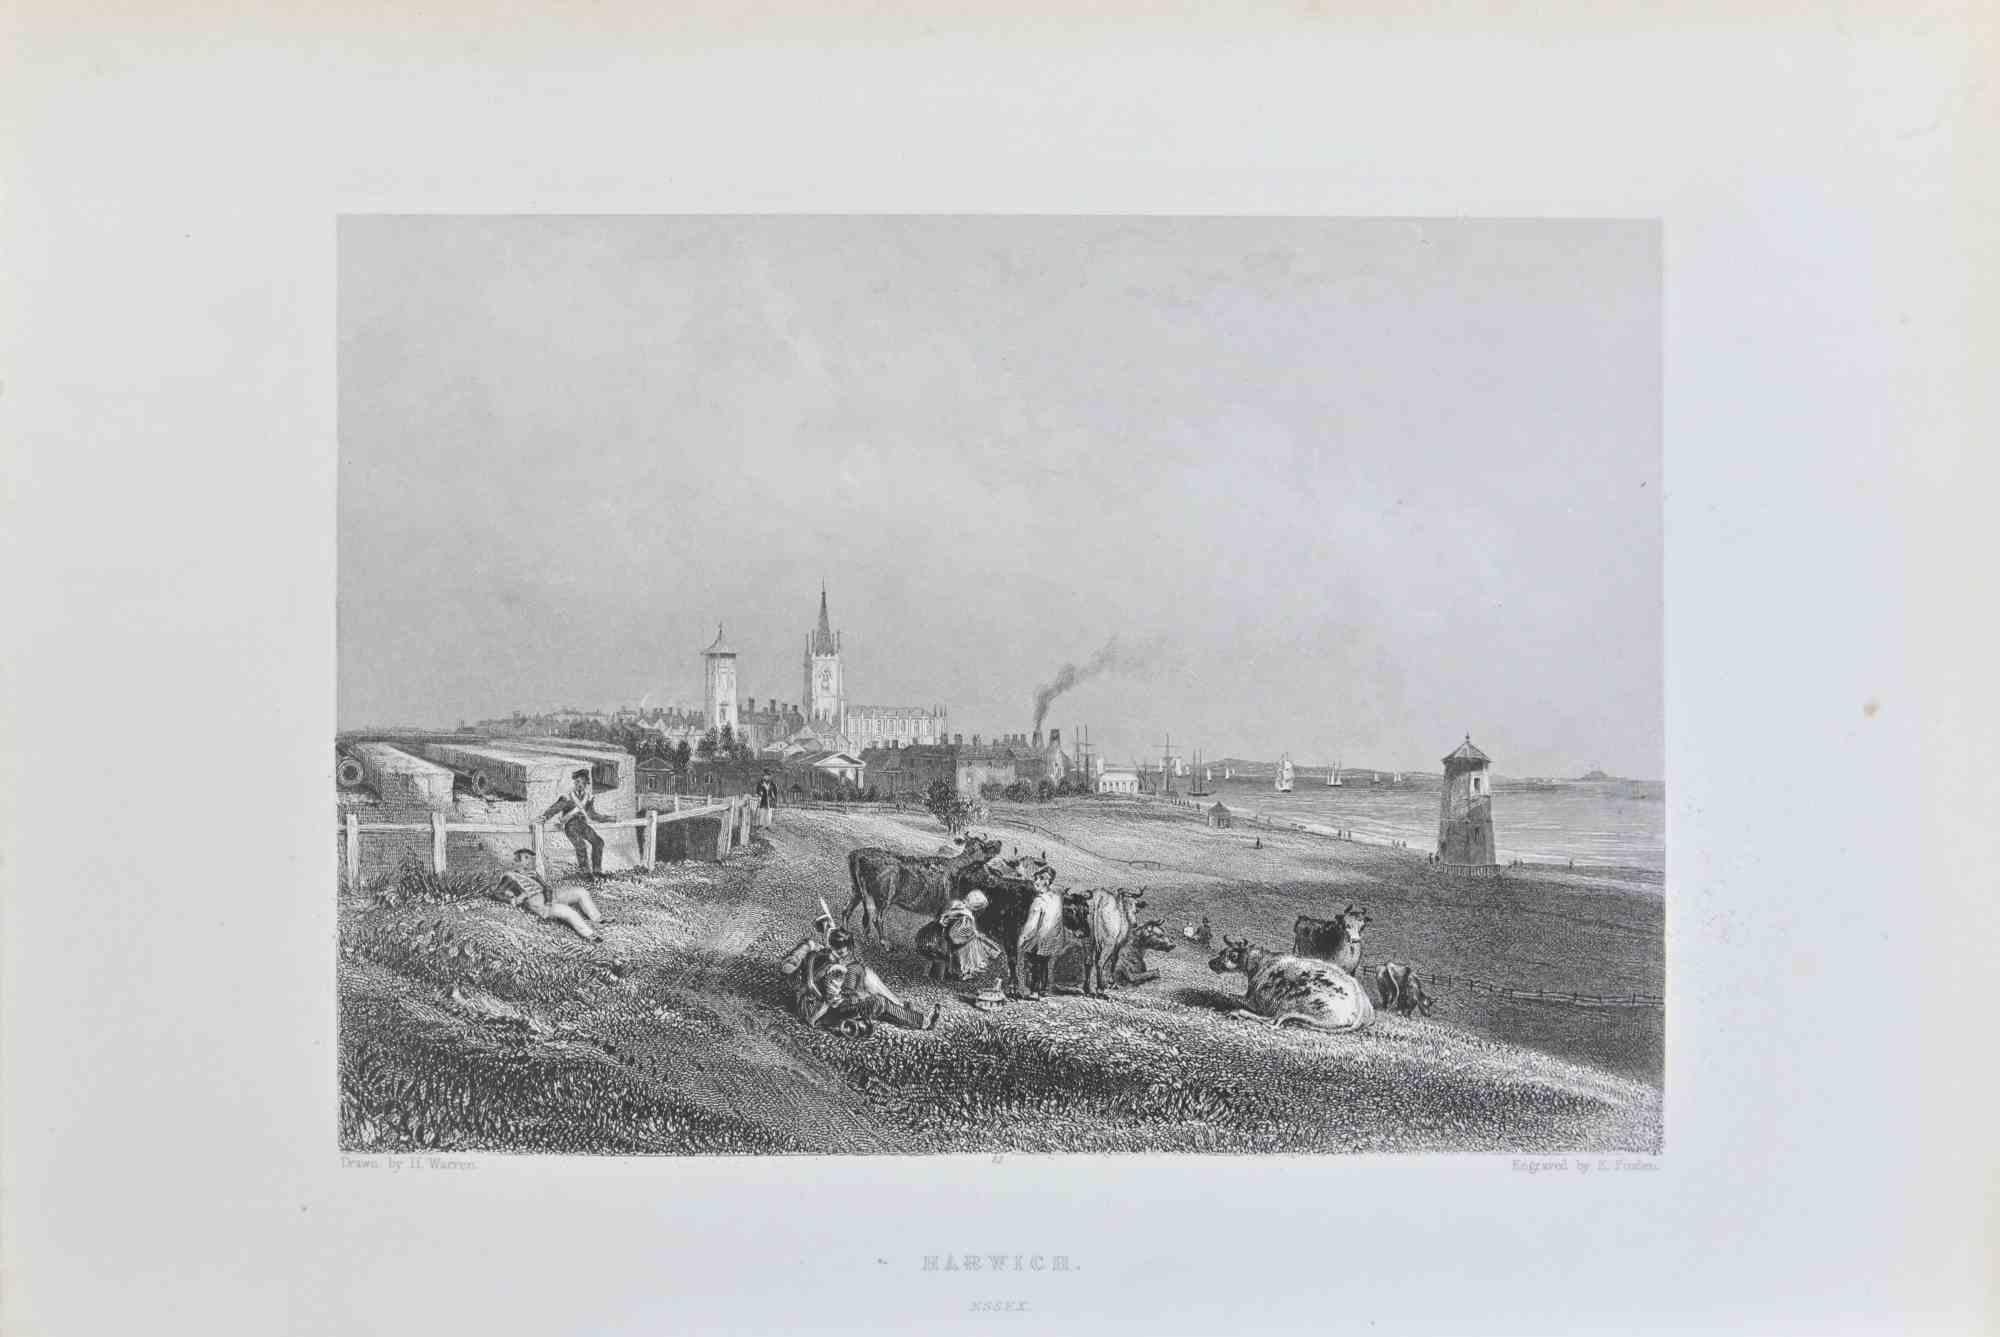 Harwich ist ein  Kupferstich auf Papier von E. Finden aus dem Jahr 1838.

Das Kunstwerk ist in gutem Zustand.

Das Kunstwerk ist in einer ausgewogenen Komposition abgebildet.
